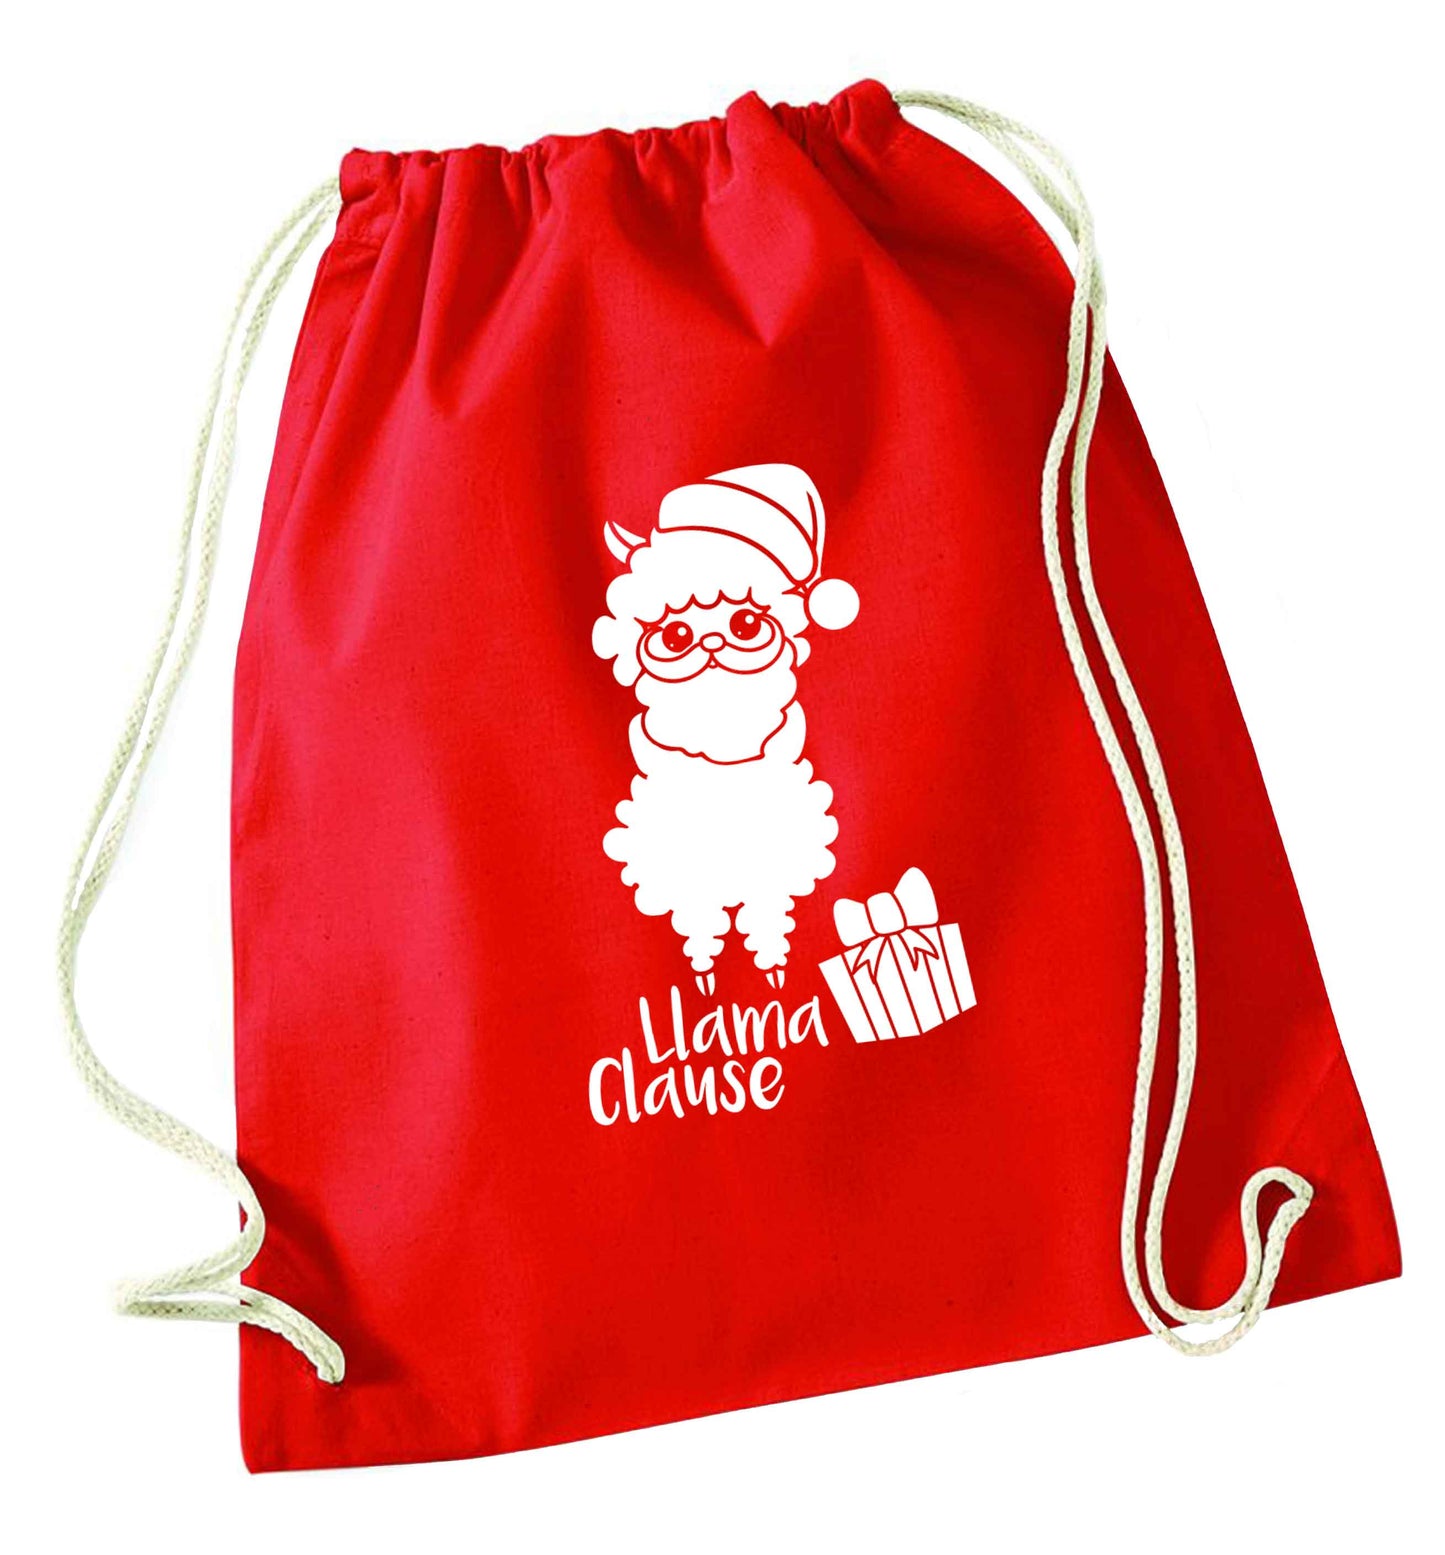 Llama Clause red drawstring bag 